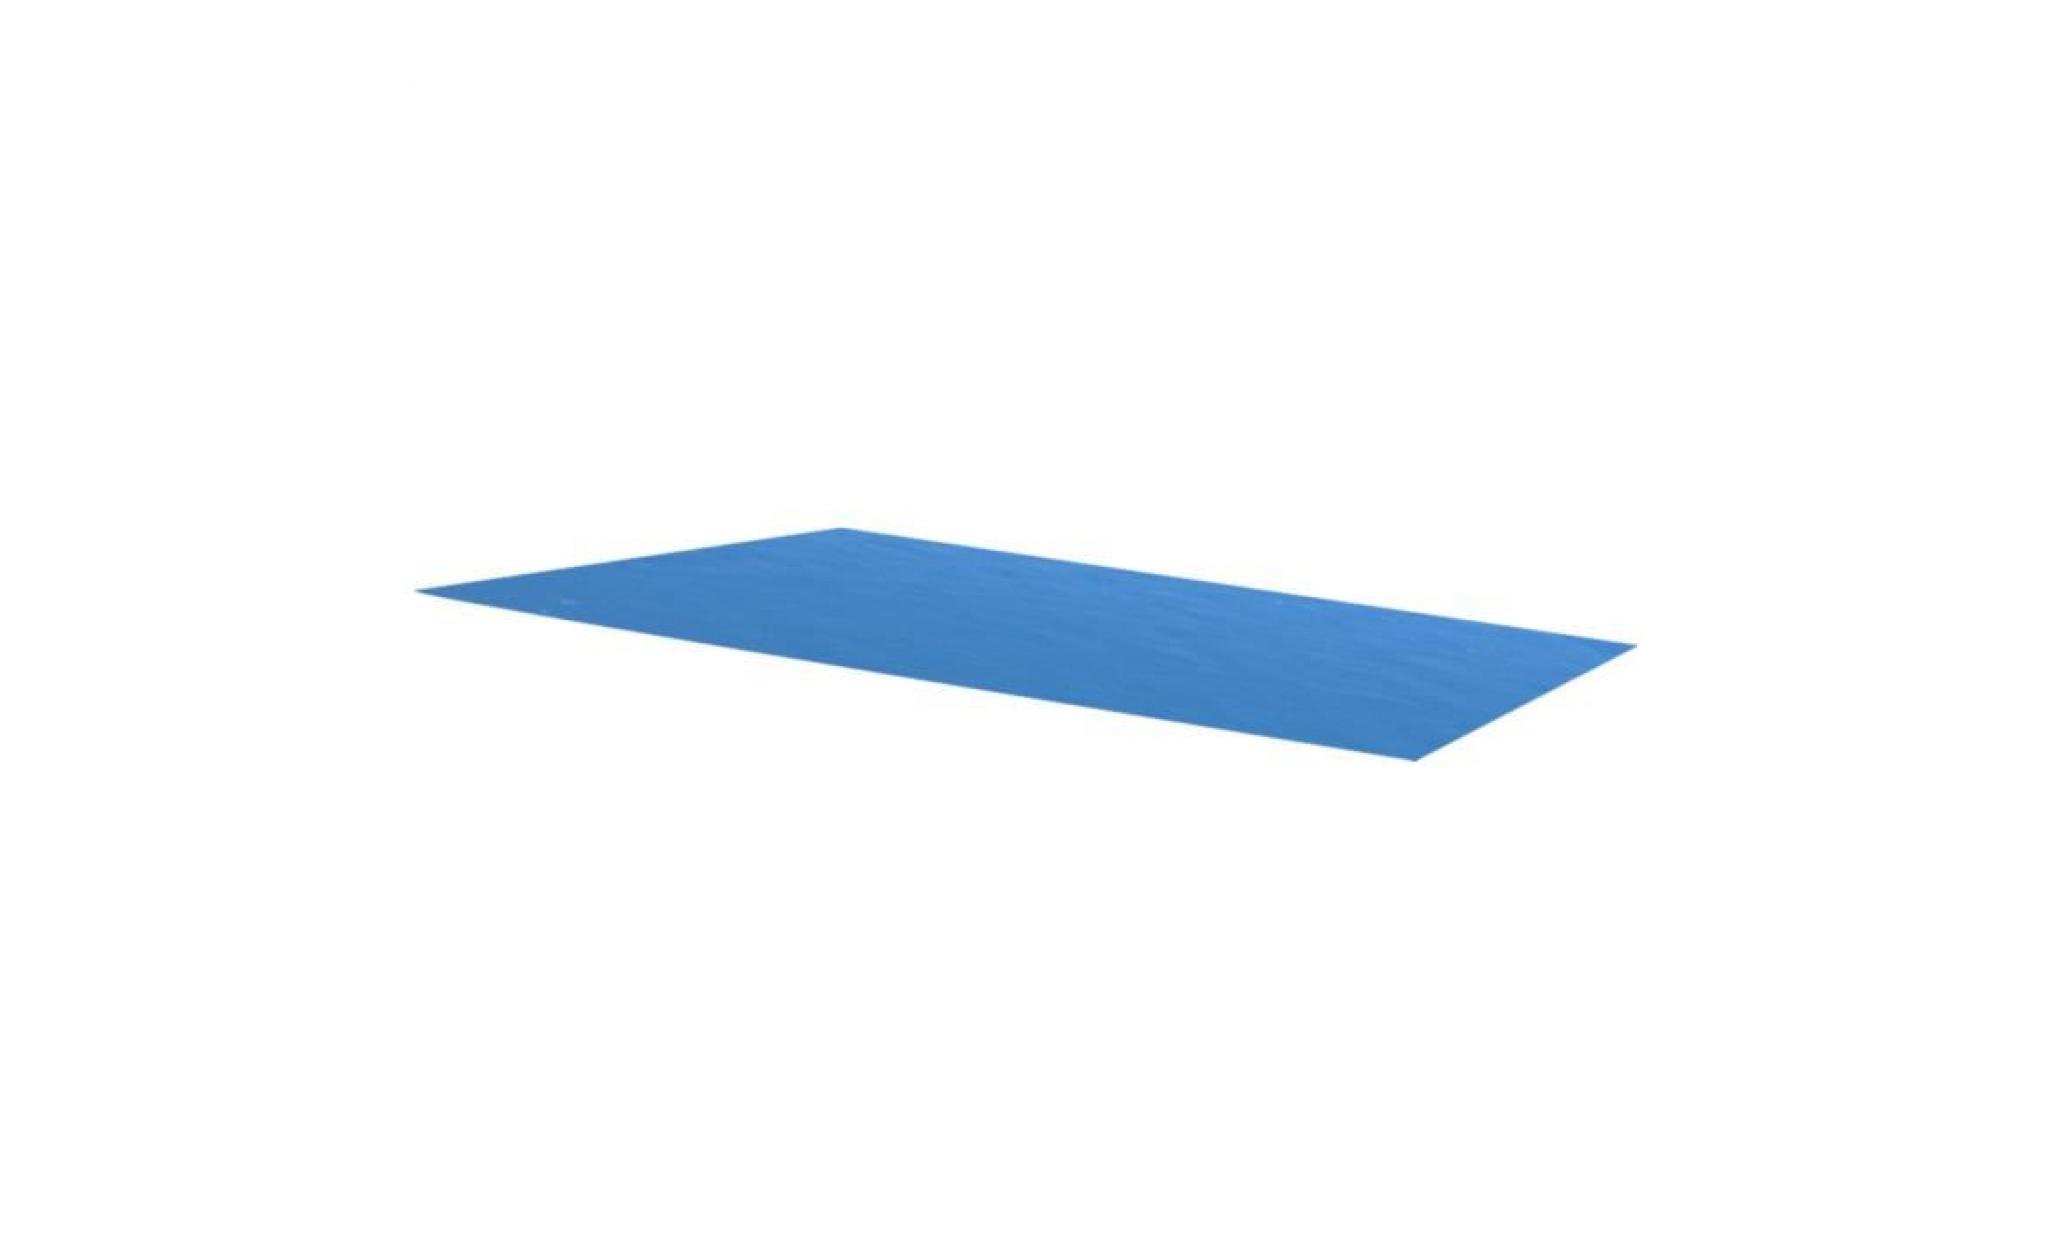 260 x 160 cm bâche couverture solaire de piscine rectangulaire bleu en pe pas cher